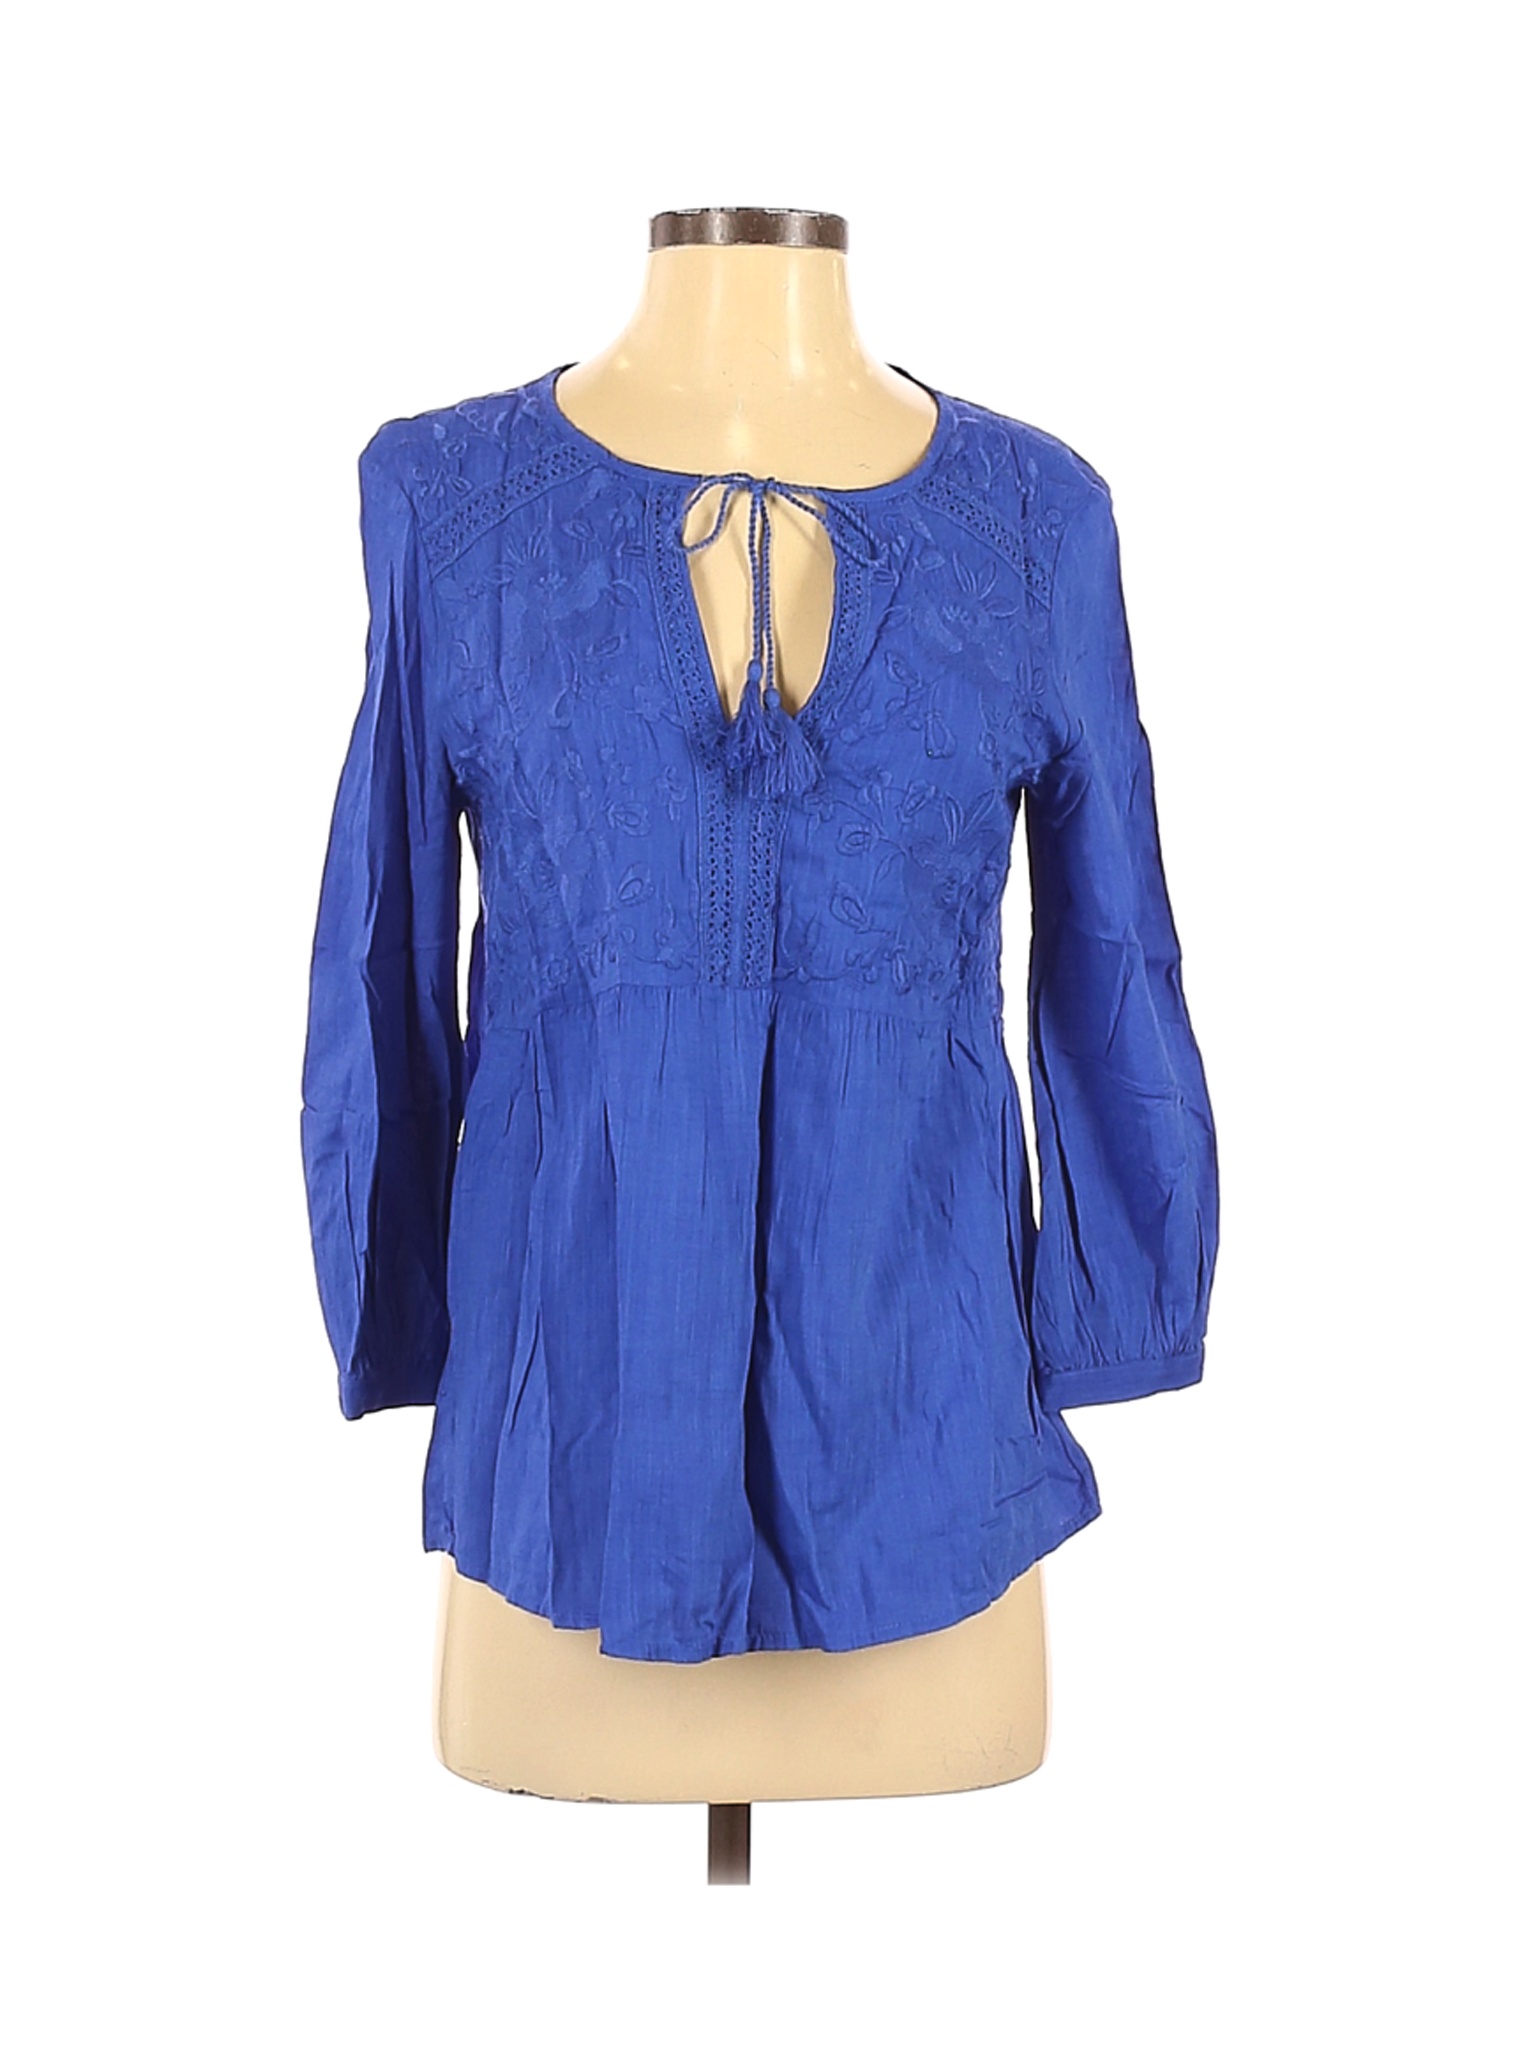 Gap Women Blue Long Sleeve Blouse XS | eBay